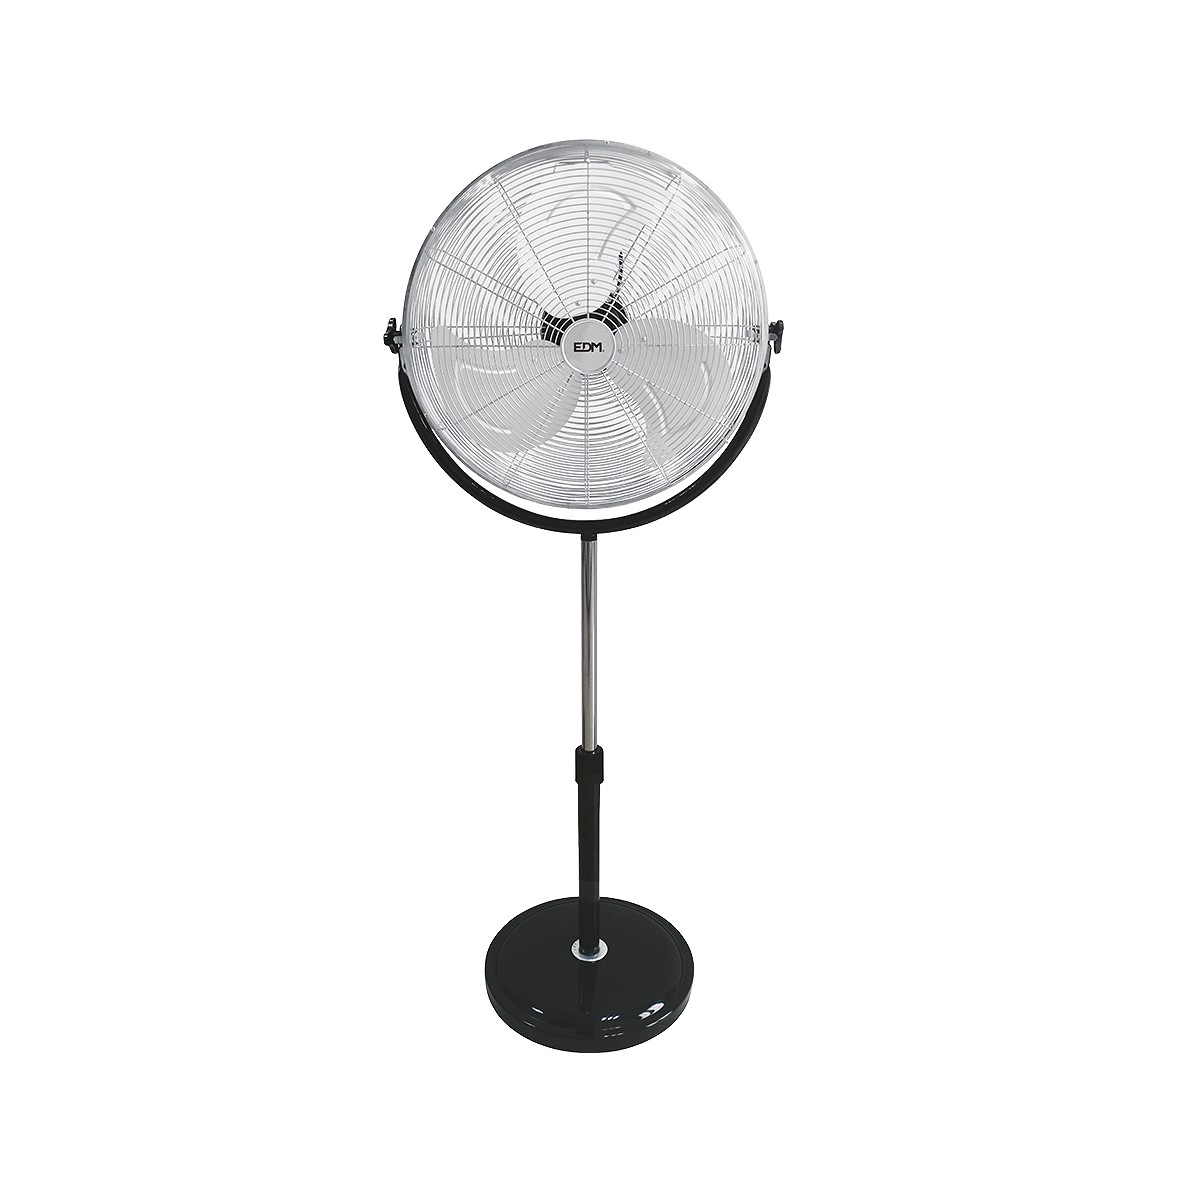 Ventilador de pie industrial, con base circular. cromado/negro potencia: 120w aspas: ø50cm altura regulable 118-148cm edm